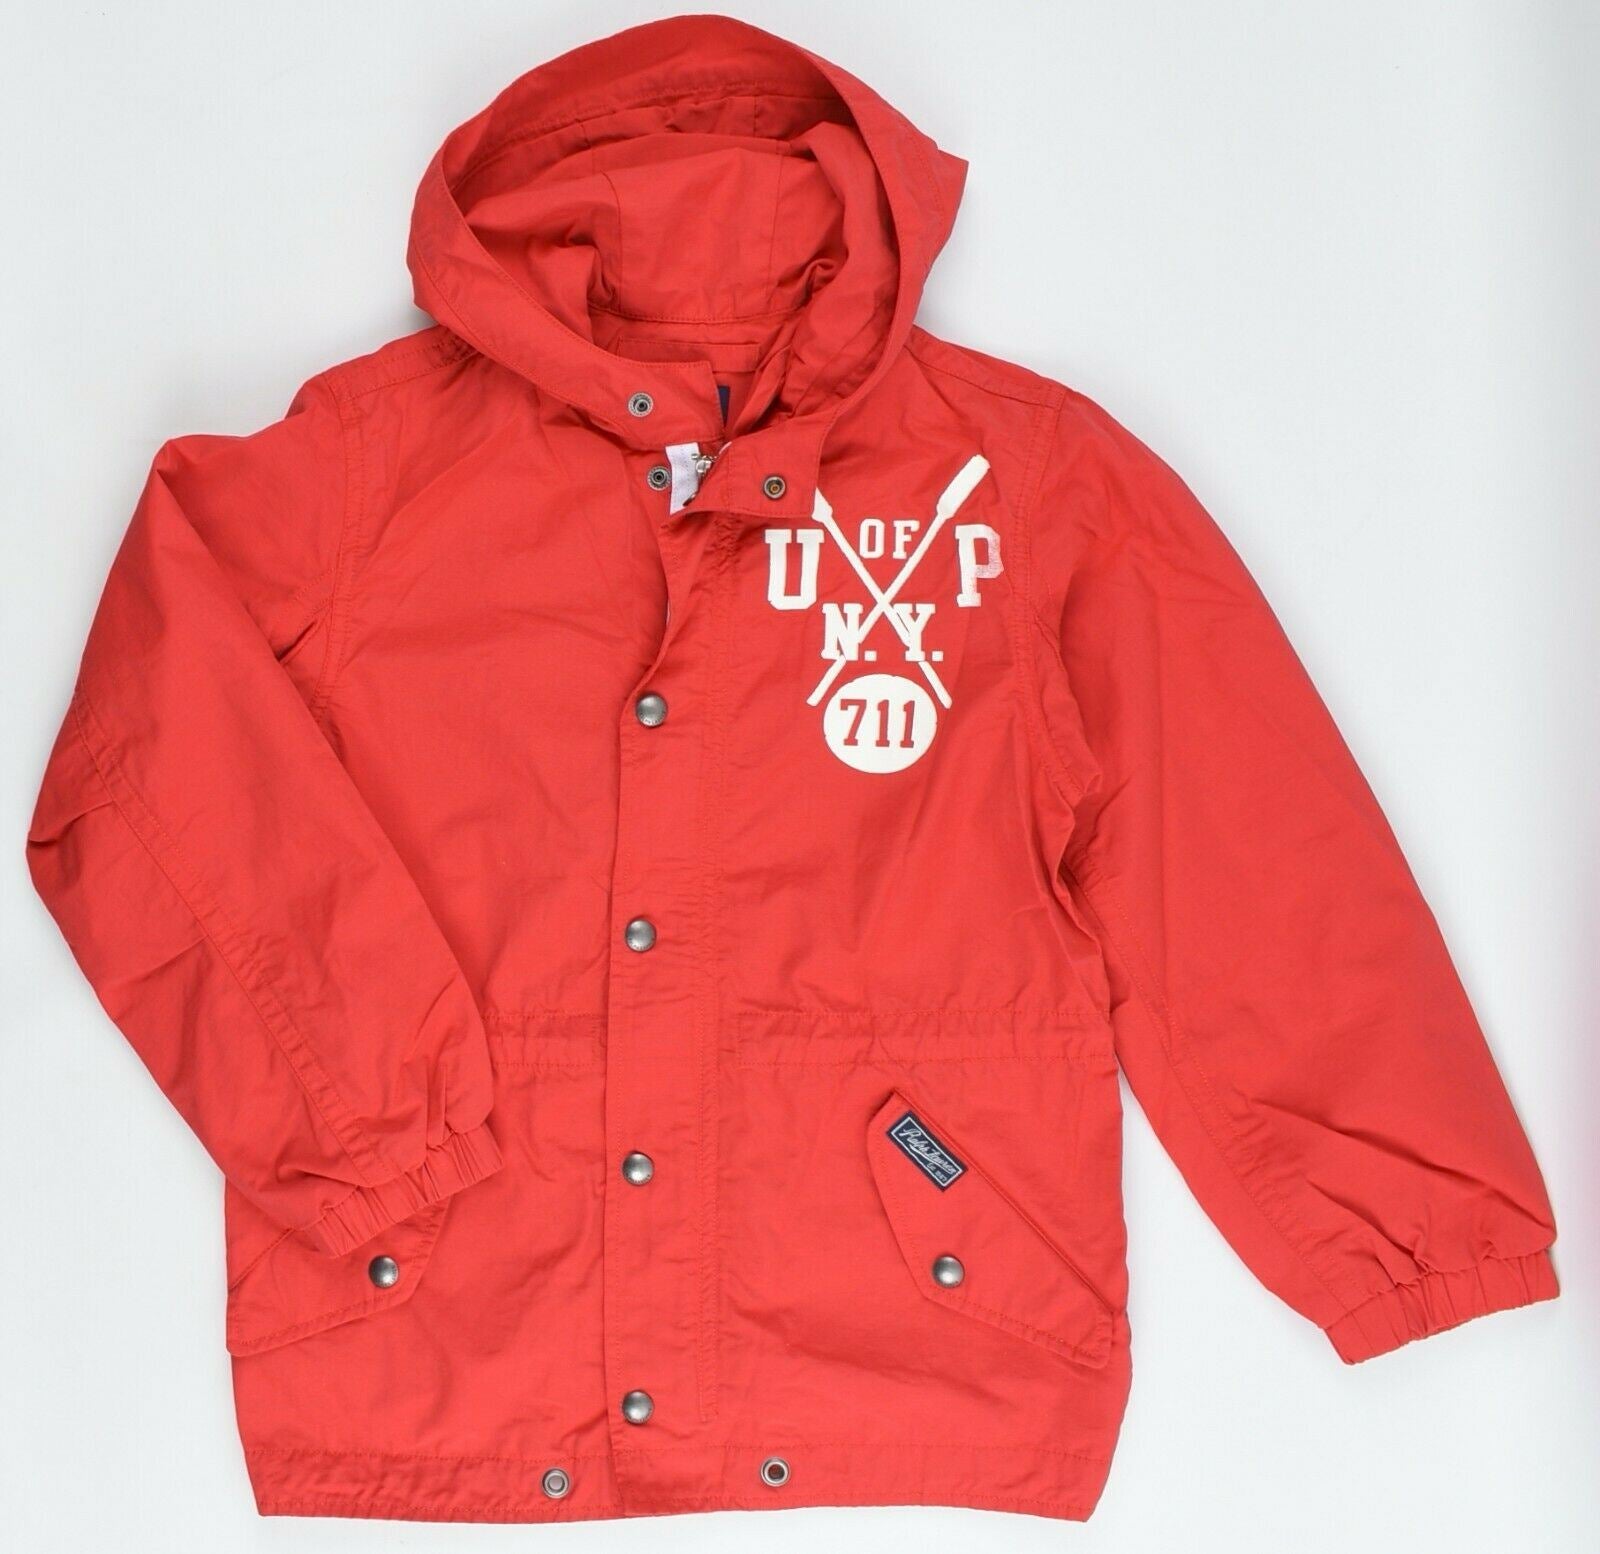 POLO RALPH LAUREN Girls' Kids' Hooded Windbreaker Jacket, Red, size 8 years